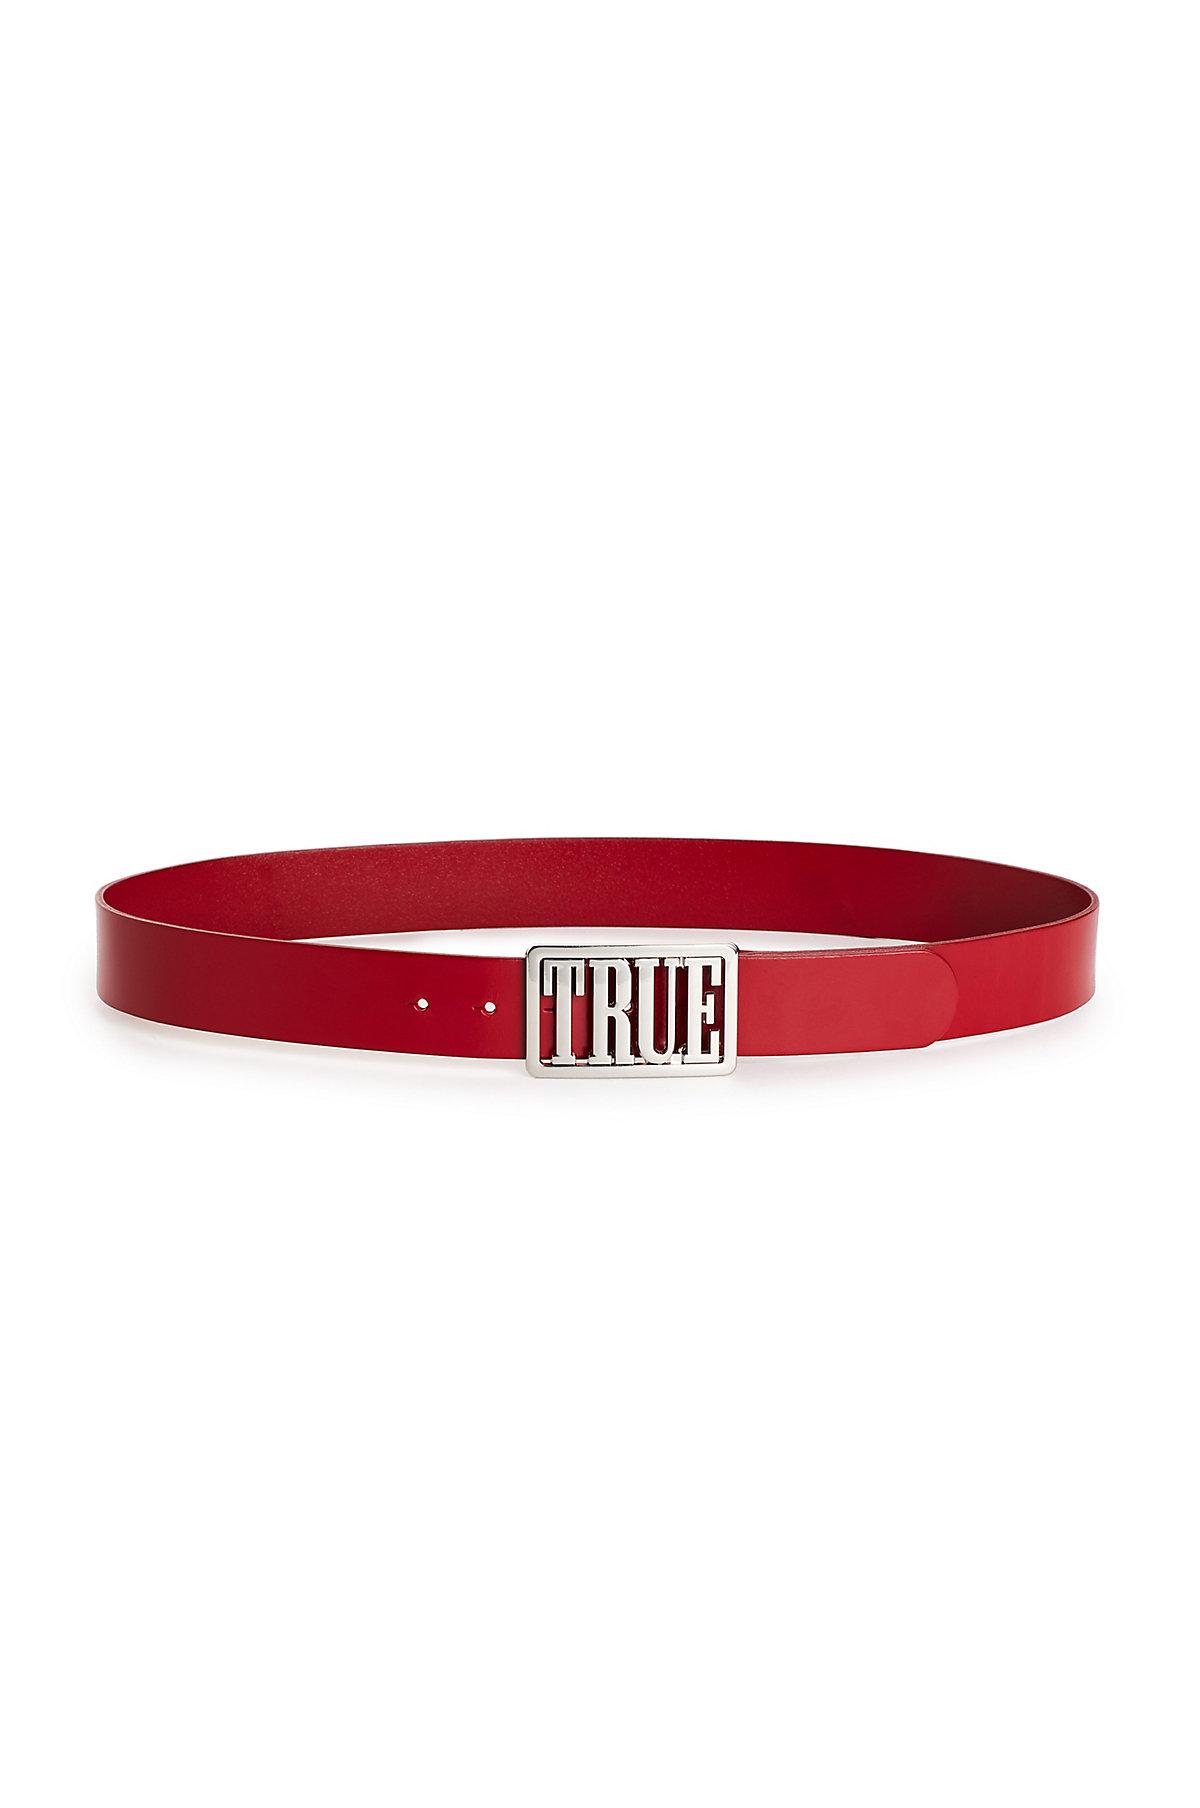 true religion belt red